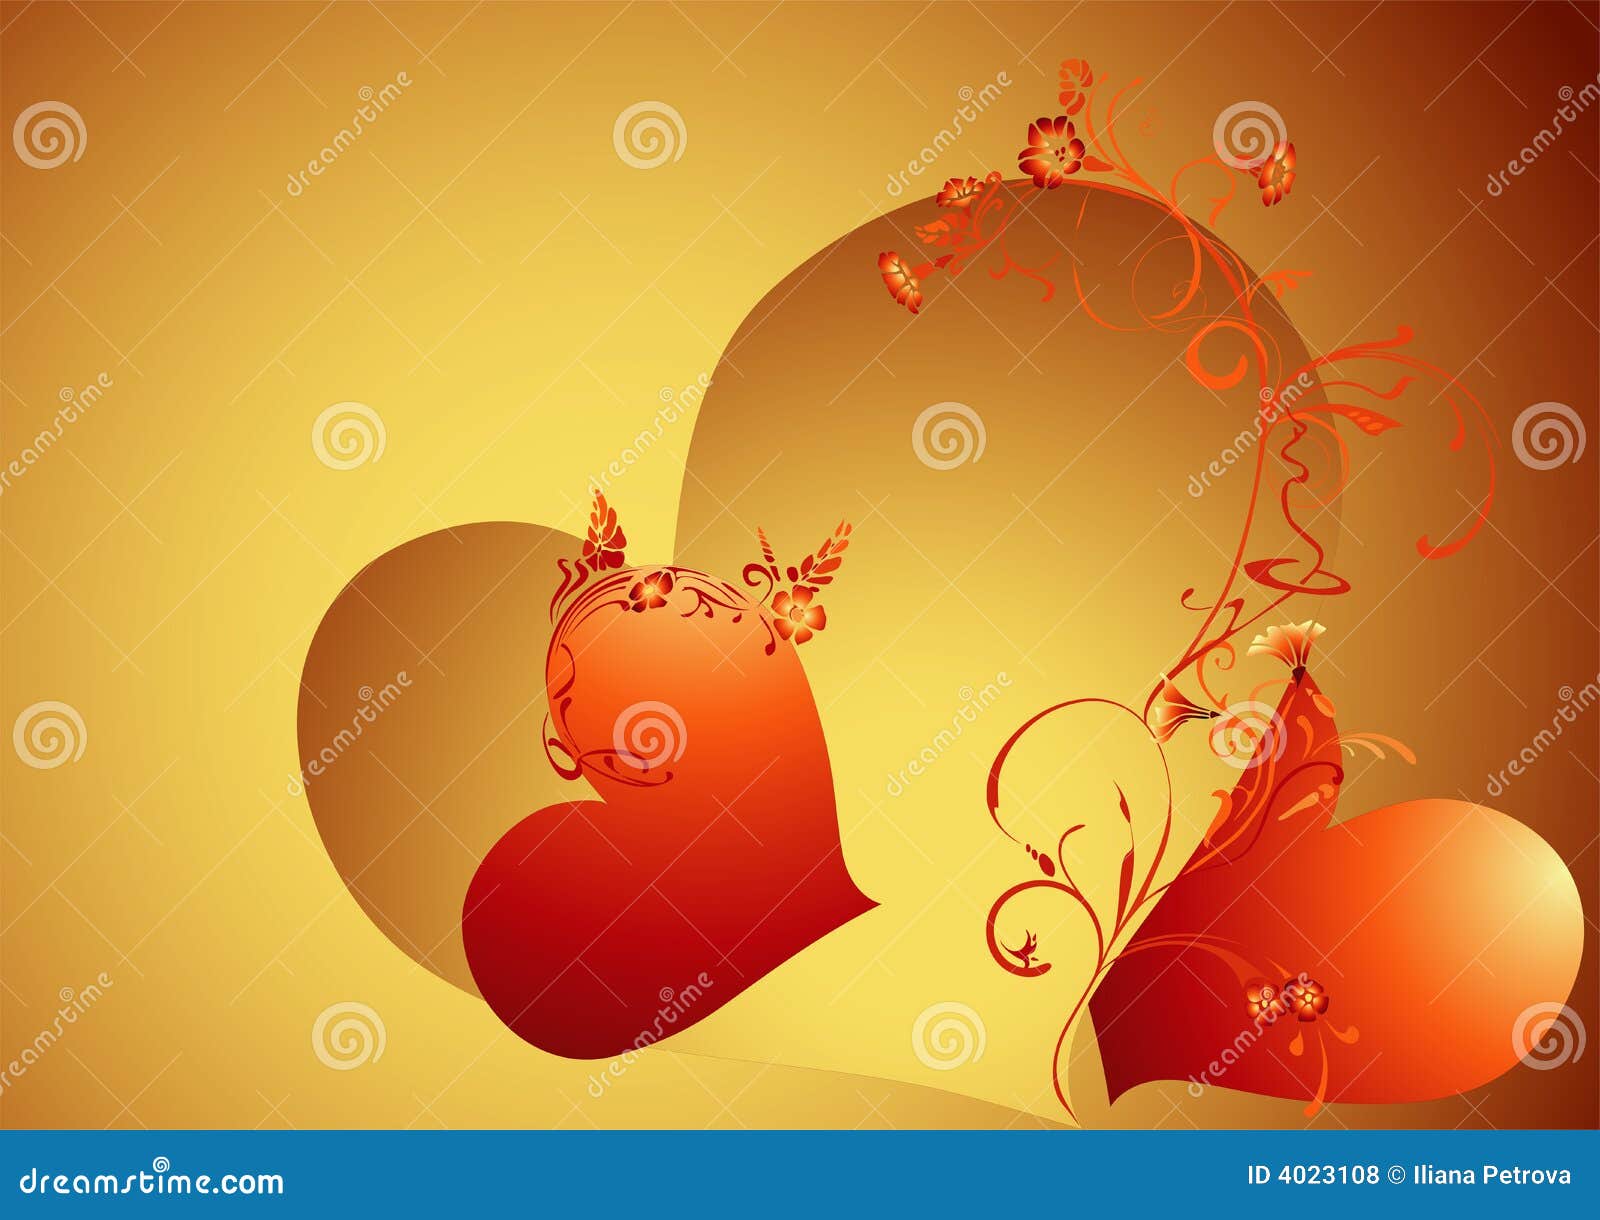 Priorità bassa del biglietto di S. Valentino dell'oro. Illustrazione di giorno del biglietto di S. Valentino dell'oro con gli elementi ed i cuori decorativi.